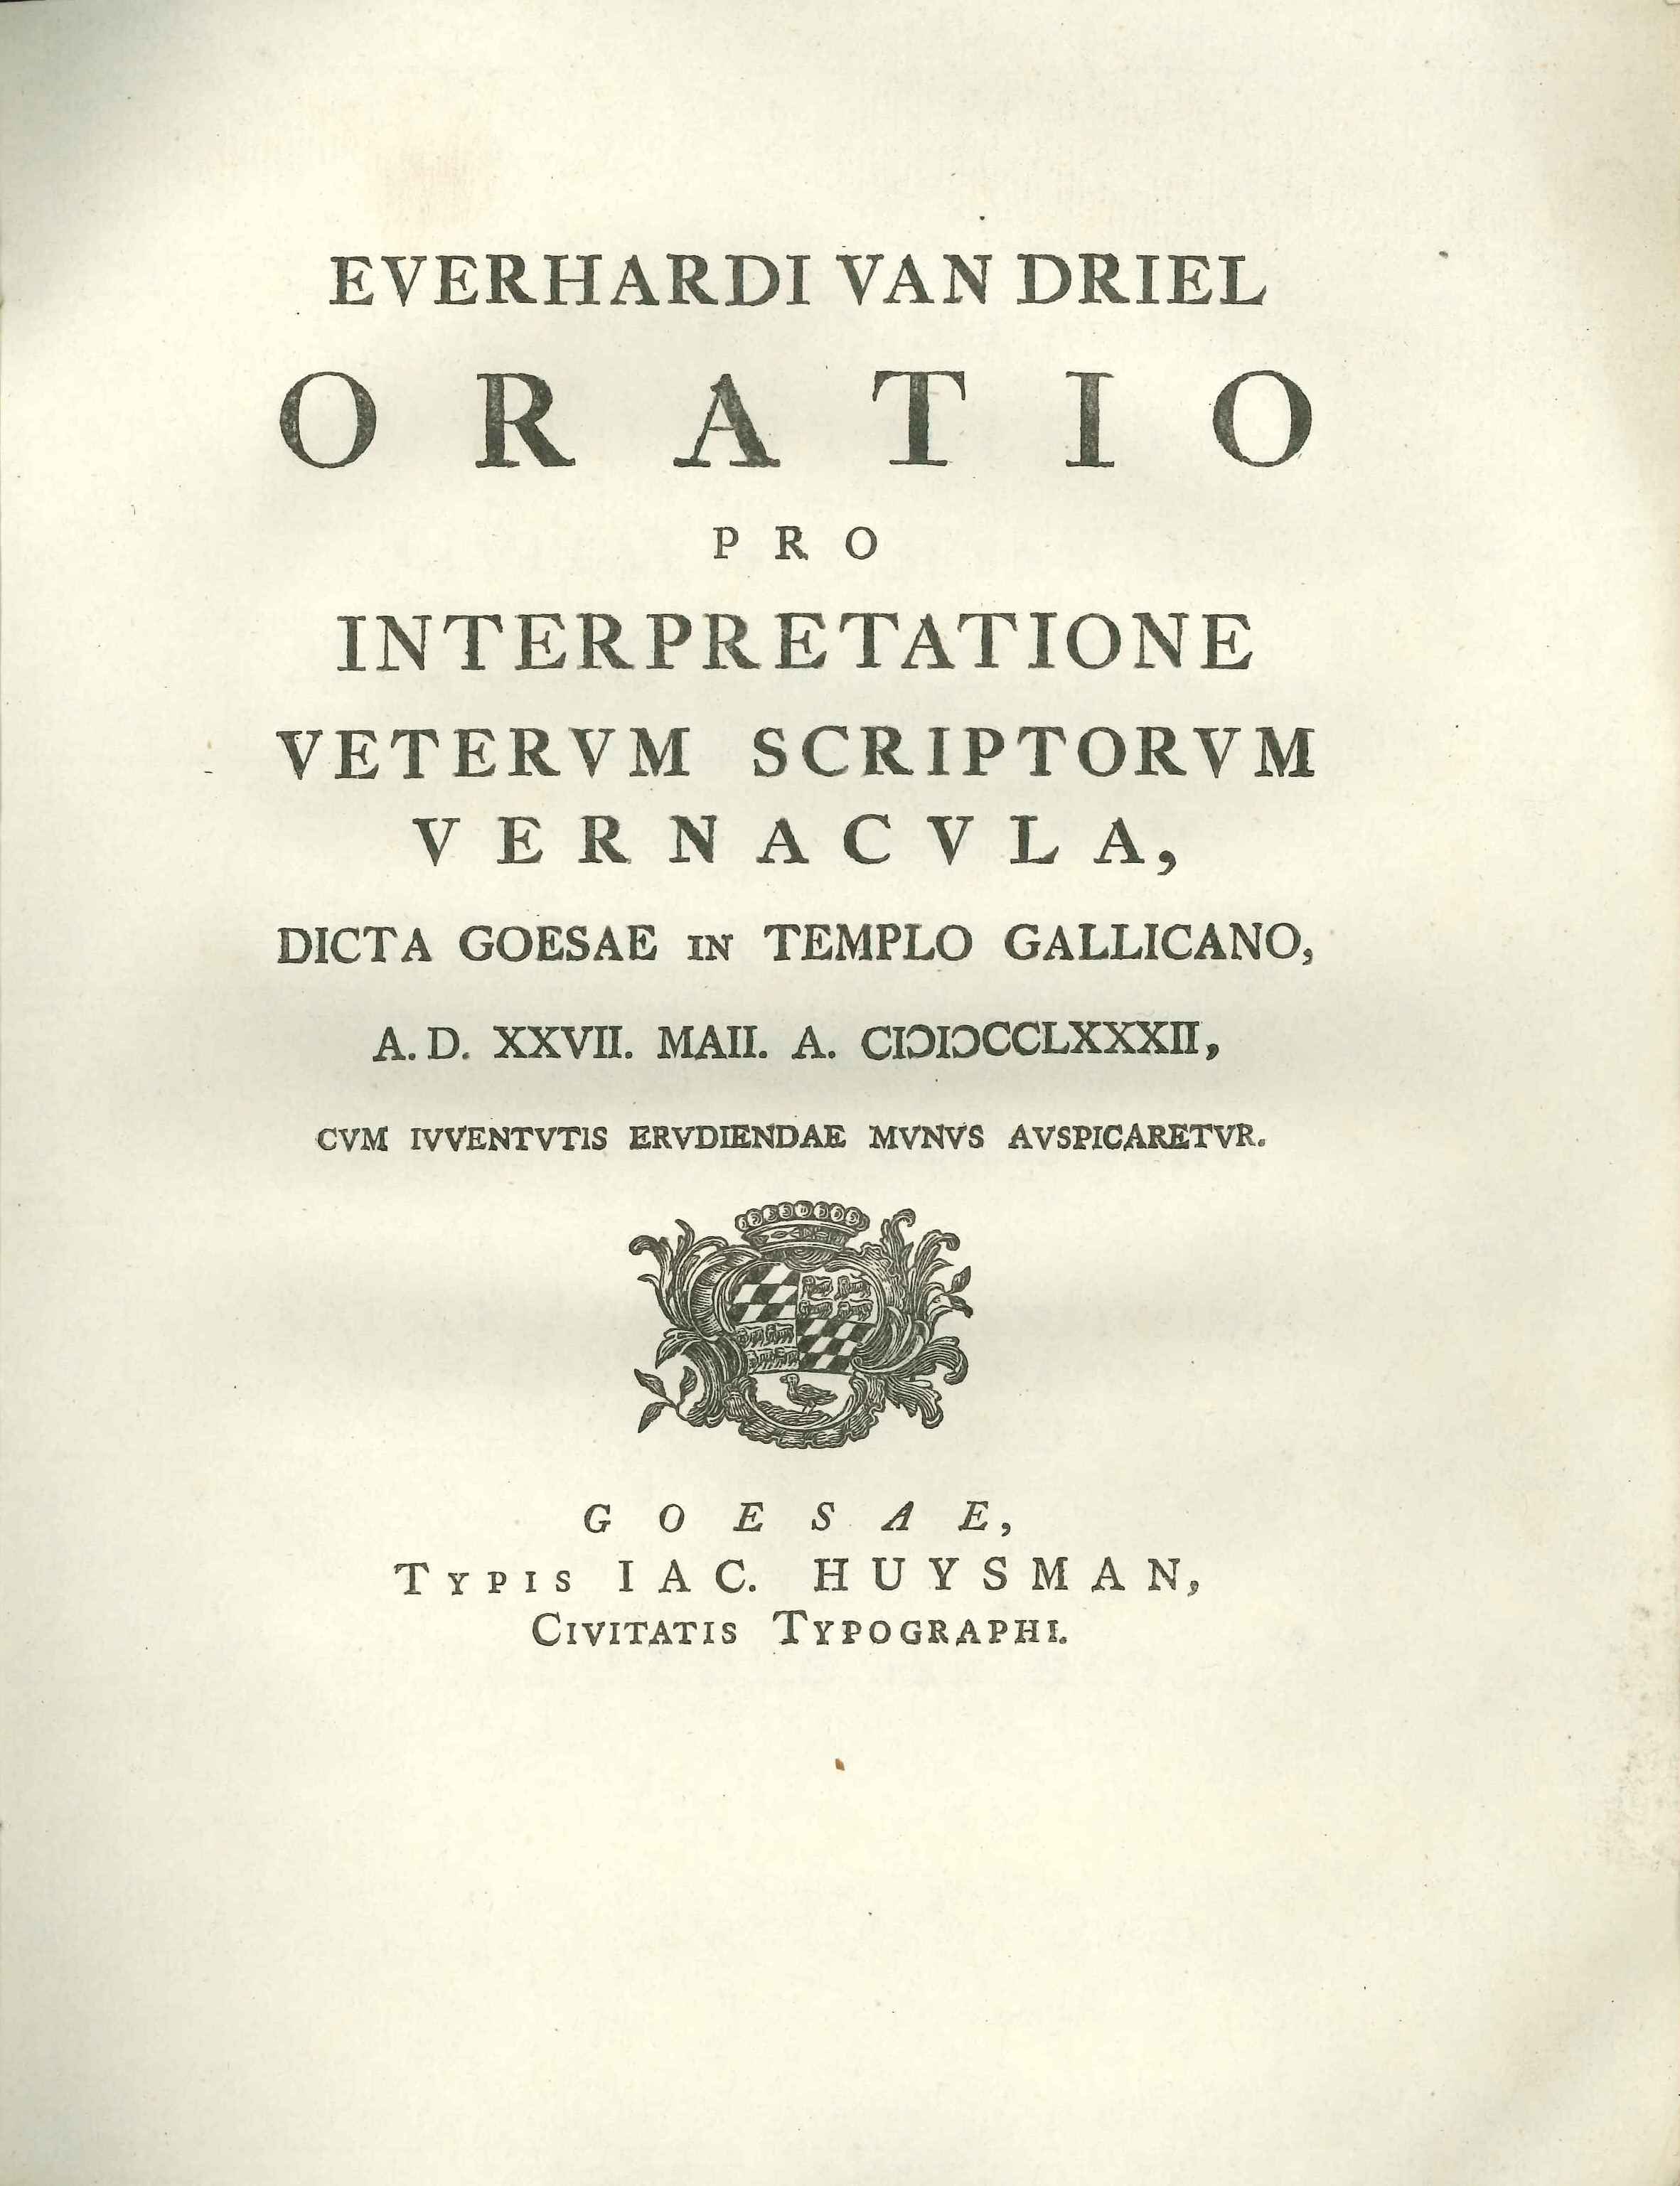 Oratio van rector Everhard van Driel, 1782.